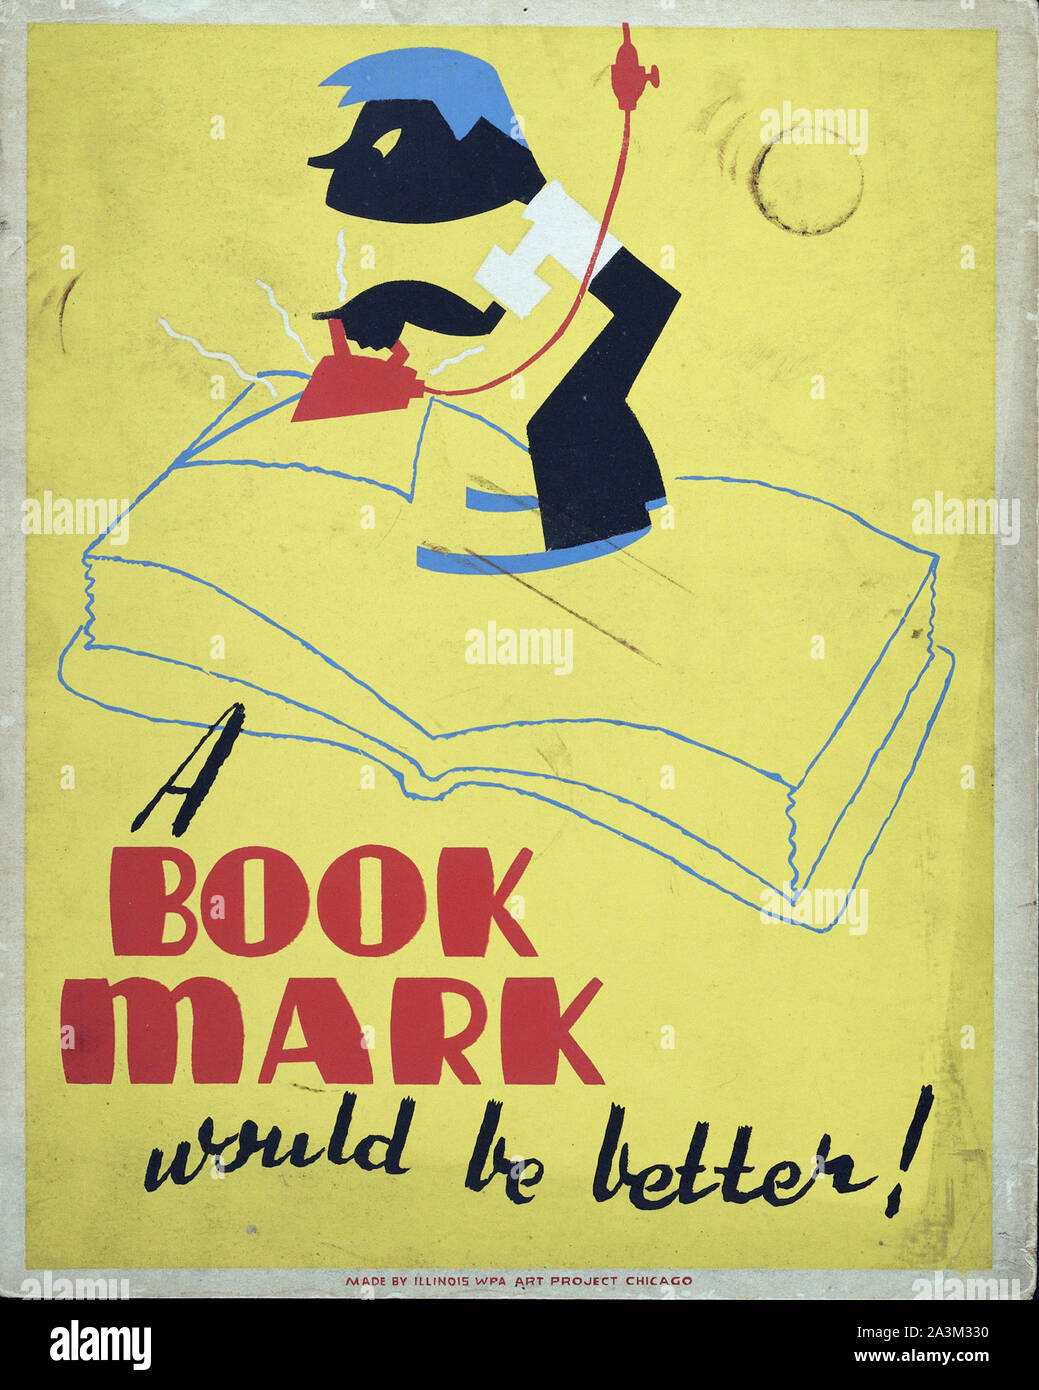 Un livre Mark serait mieux ! - L'avancement des travaux de l'Administration - Projet d'art fédéral - Vintage poster Banque D'Images